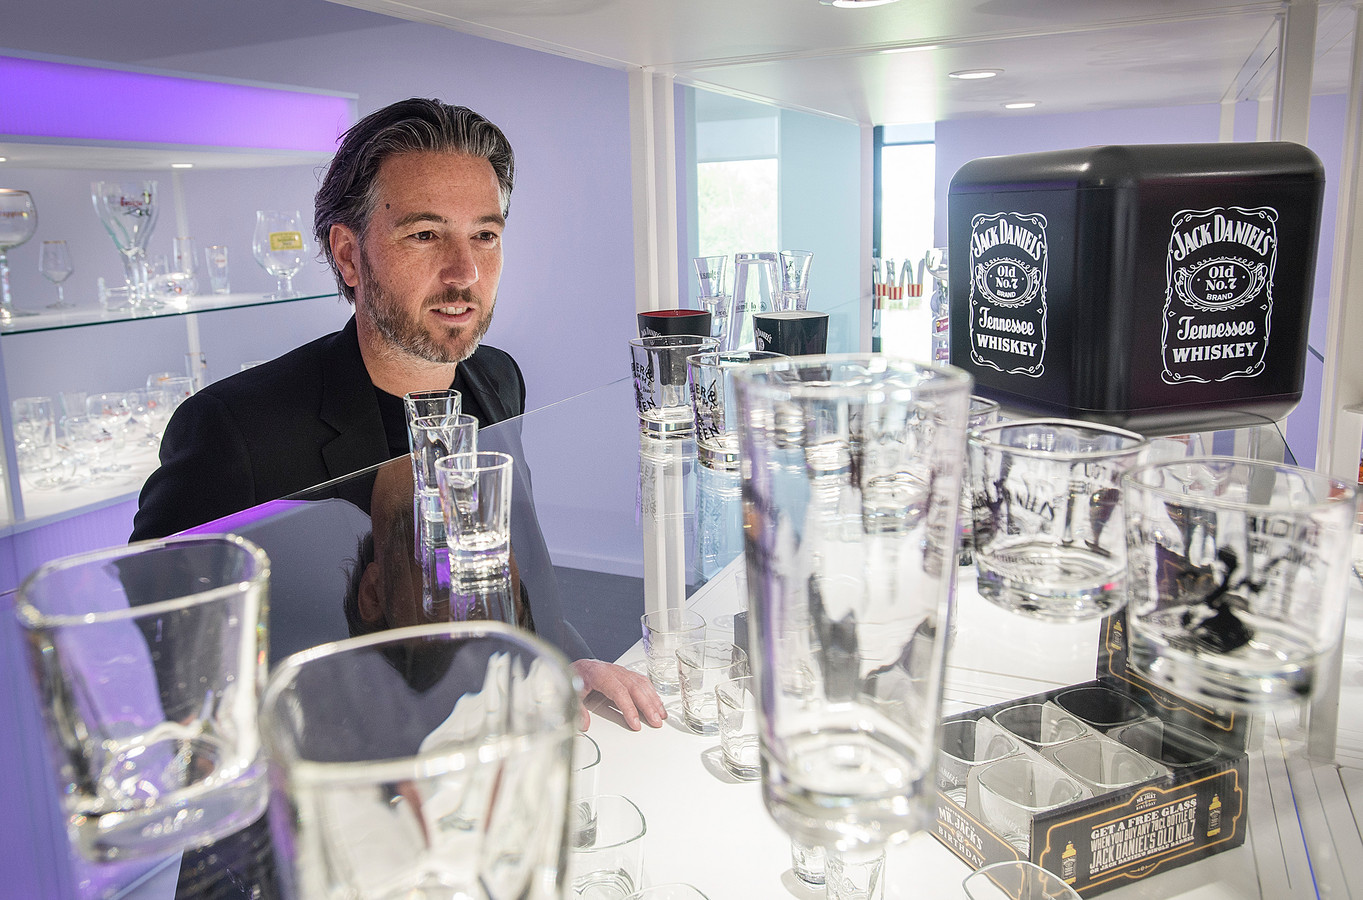 Beknopt Ochtend Moedig Brabanders bedrukken miljoenen glazen voor Jack Daniels | Foto | AD.nl